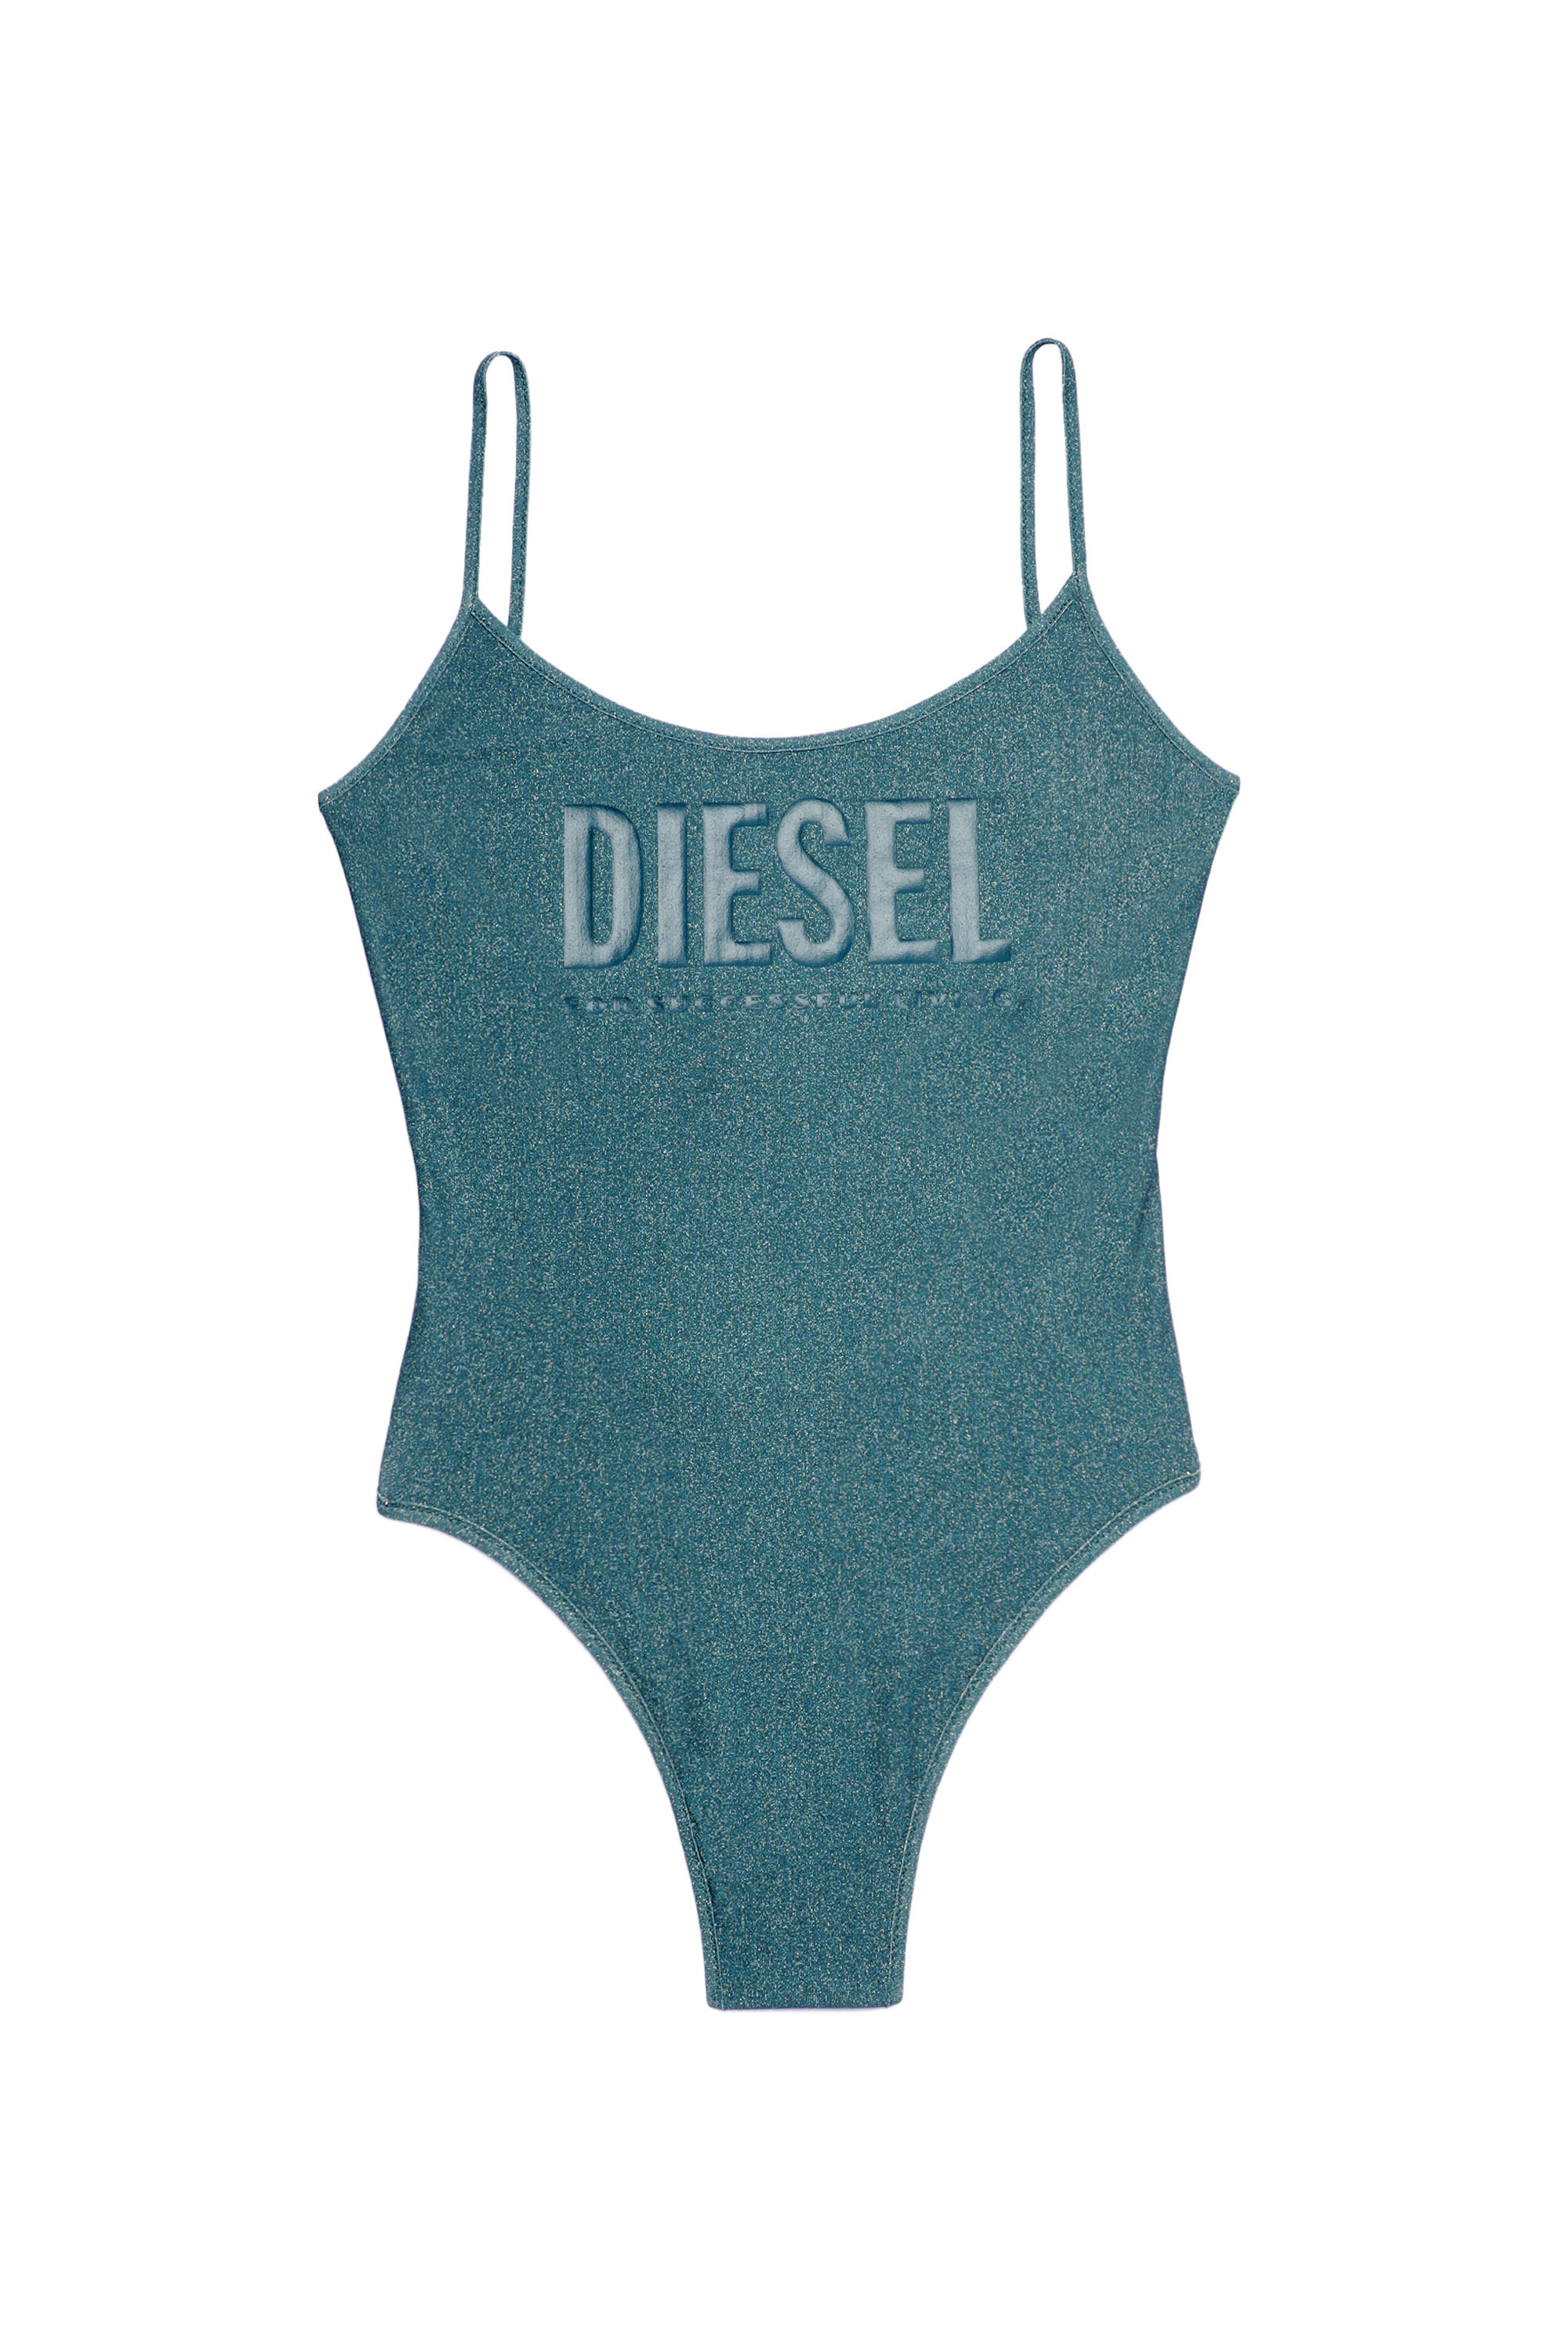 Diesel - BFSW-GRETEL, Blue - Image 3